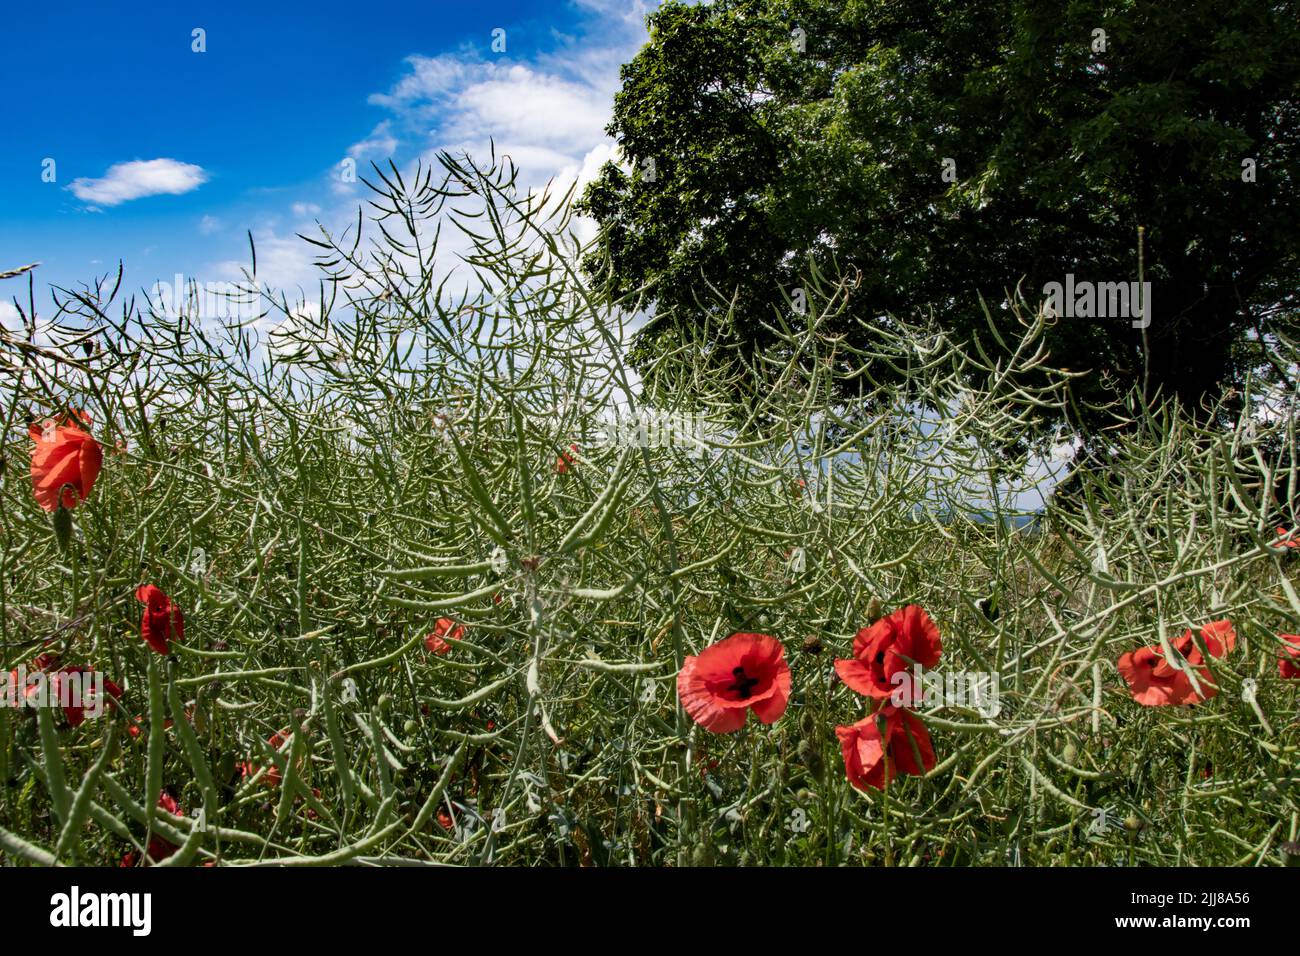 Klatschmohn steht vor einem Rapsfeld welches seine Blüten schon verloren hat.rechts hinten im Bild domeniert ein grüner Baum .Links hinten Himmel und Stock Photo